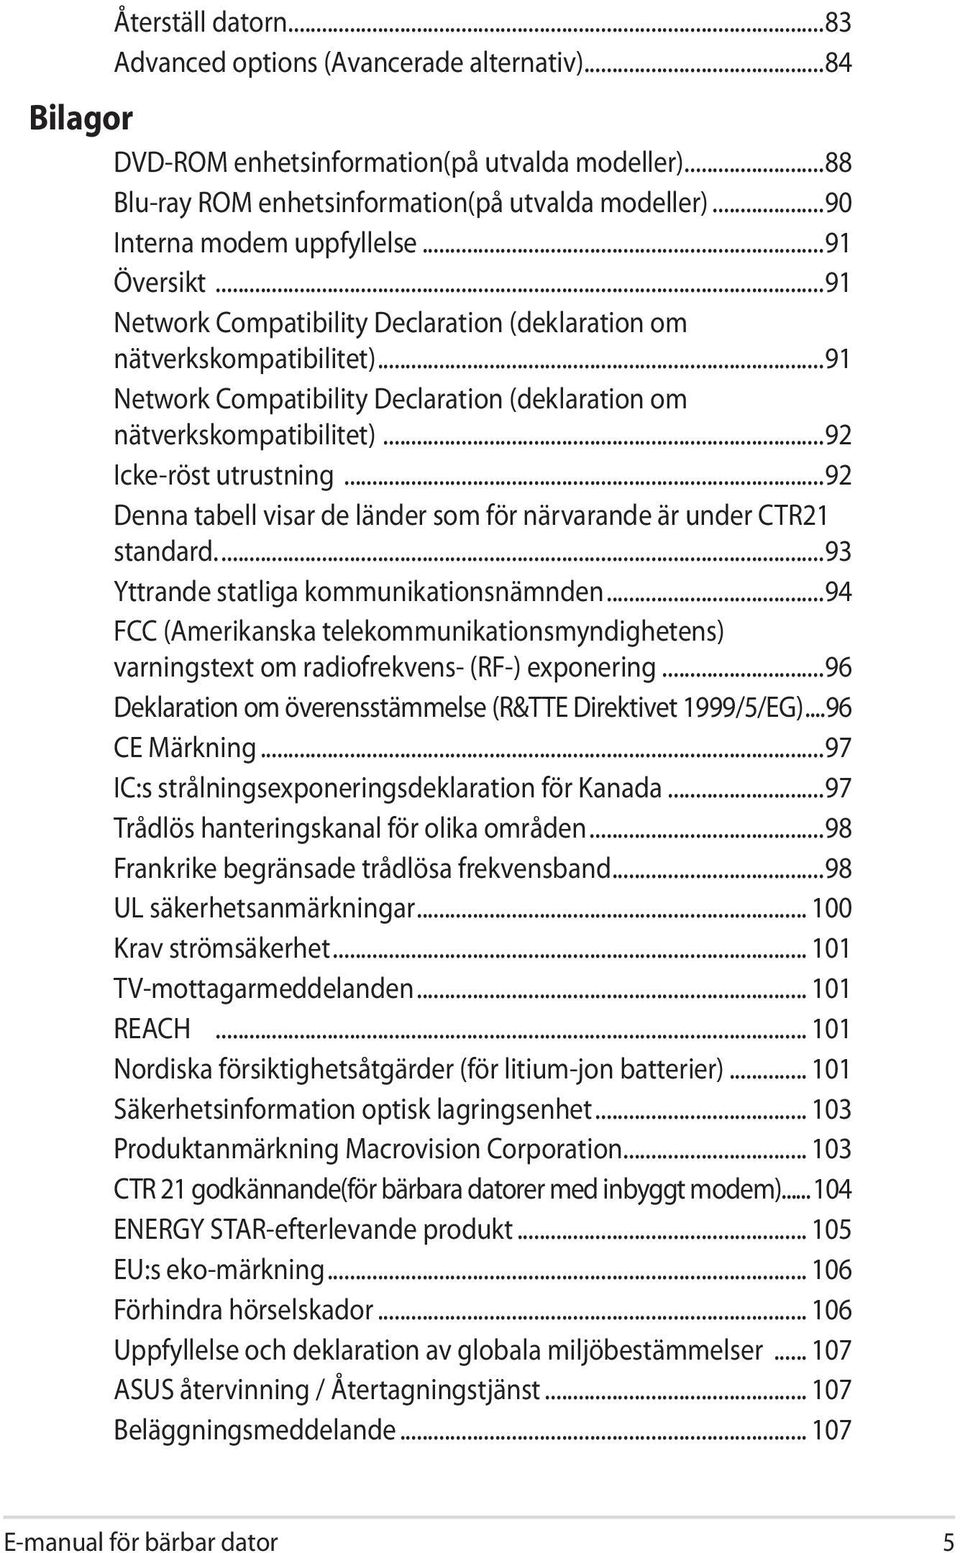 ..91 Network Compatibility Declaration (deklaration om nätverkskompatibilitet)...92 Icke-röst utrustning...92 Denna tabell visar de länder som för närvarande är under CTR21 standard.